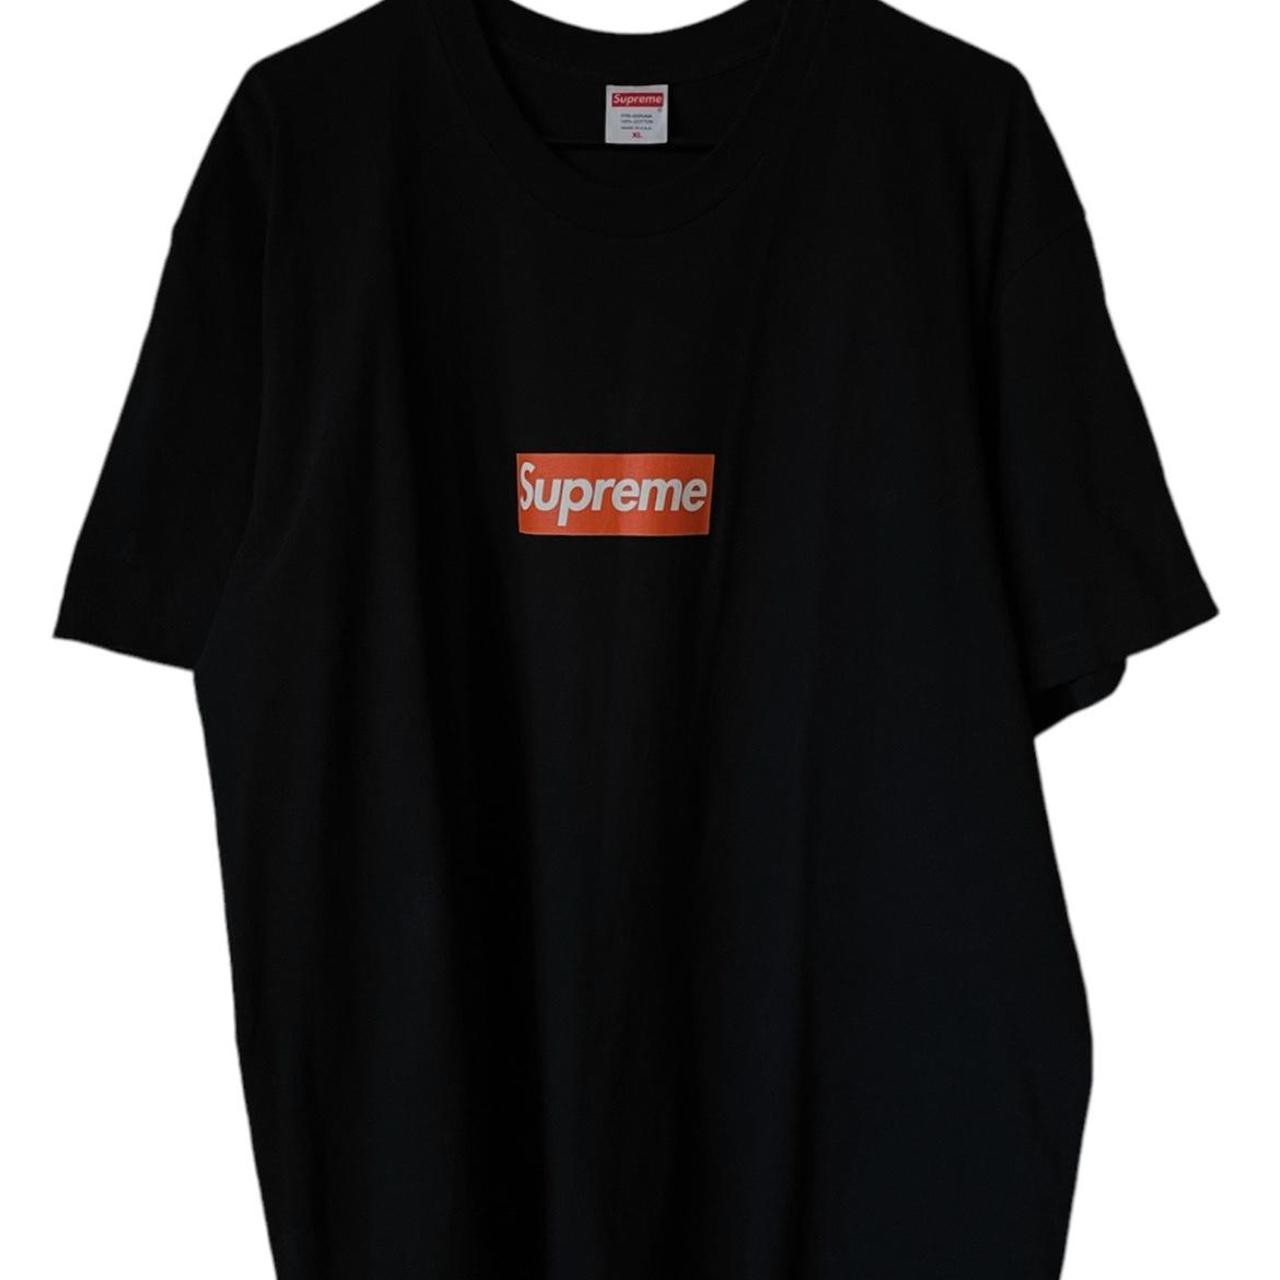 Supreme Men's Black and Red T-shirt | Depop